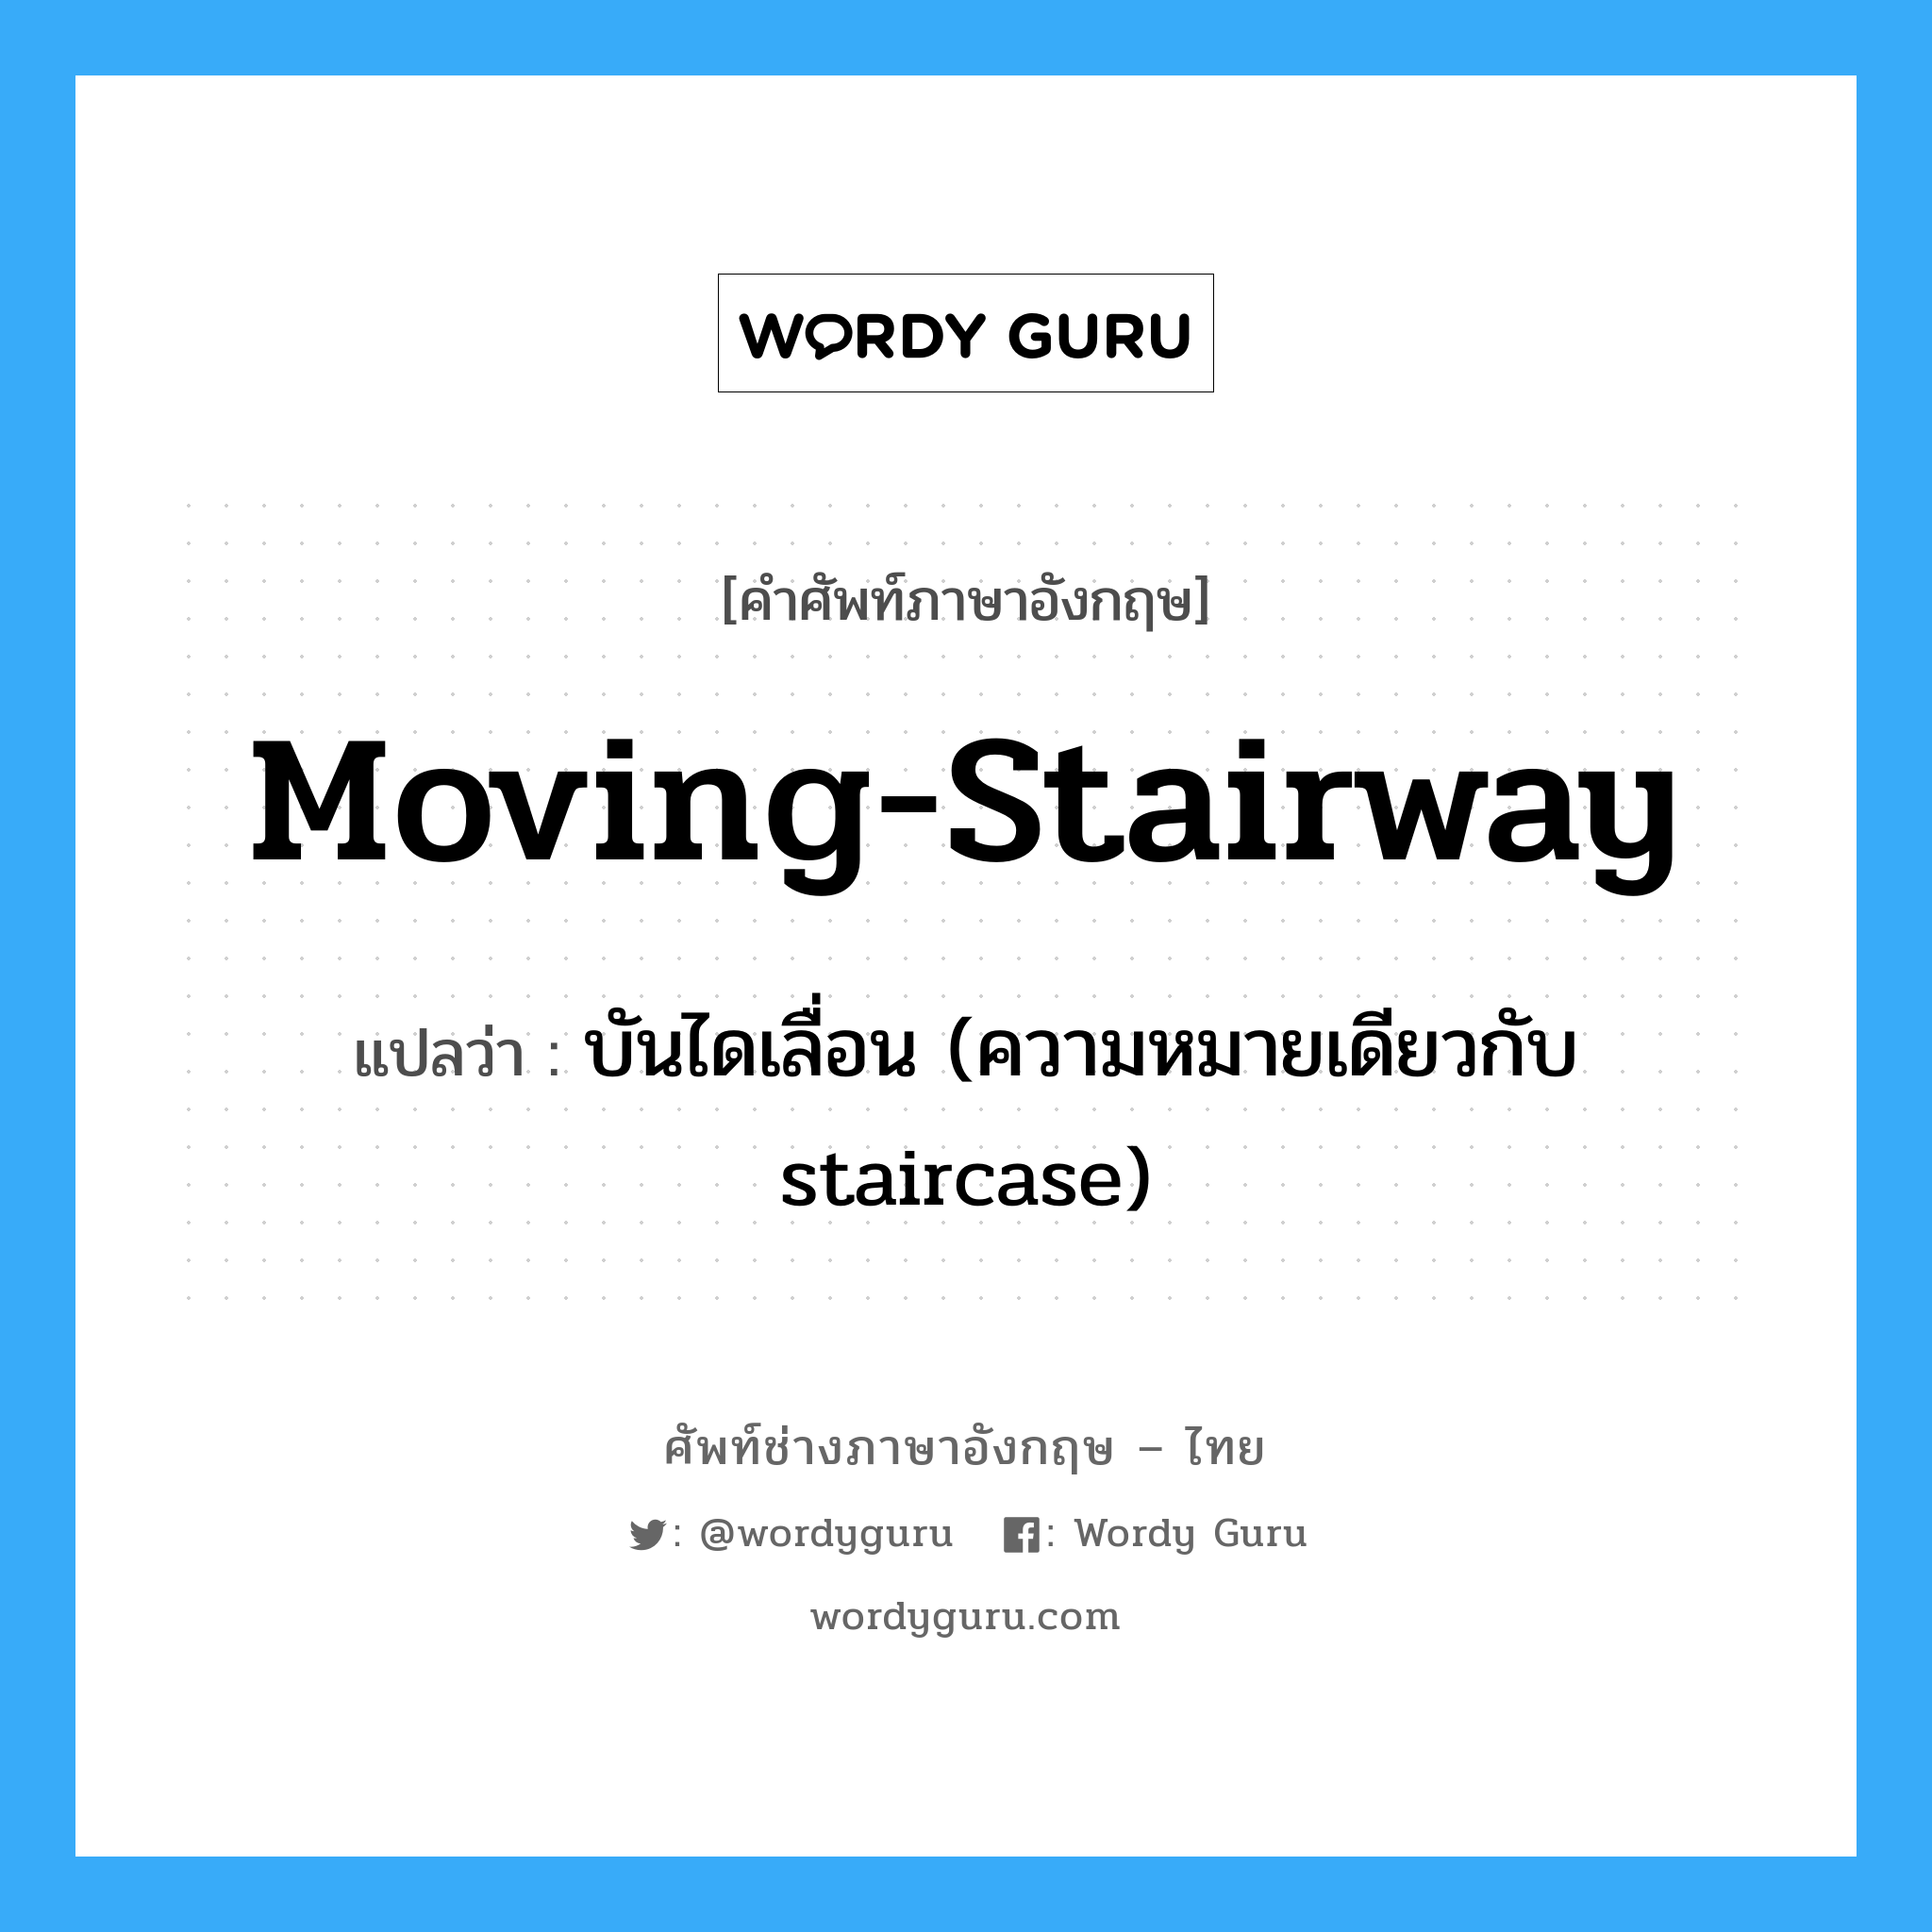 บันไดเลื่อน (ความหมายเดียวกับ staircase) ภาษาอังกฤษ?, คำศัพท์ช่างภาษาอังกฤษ - ไทย บันไดเลื่อน (ความหมายเดียวกับ staircase) คำศัพท์ภาษาอังกฤษ บันไดเลื่อน (ความหมายเดียวกับ staircase) แปลว่า moving-stairway